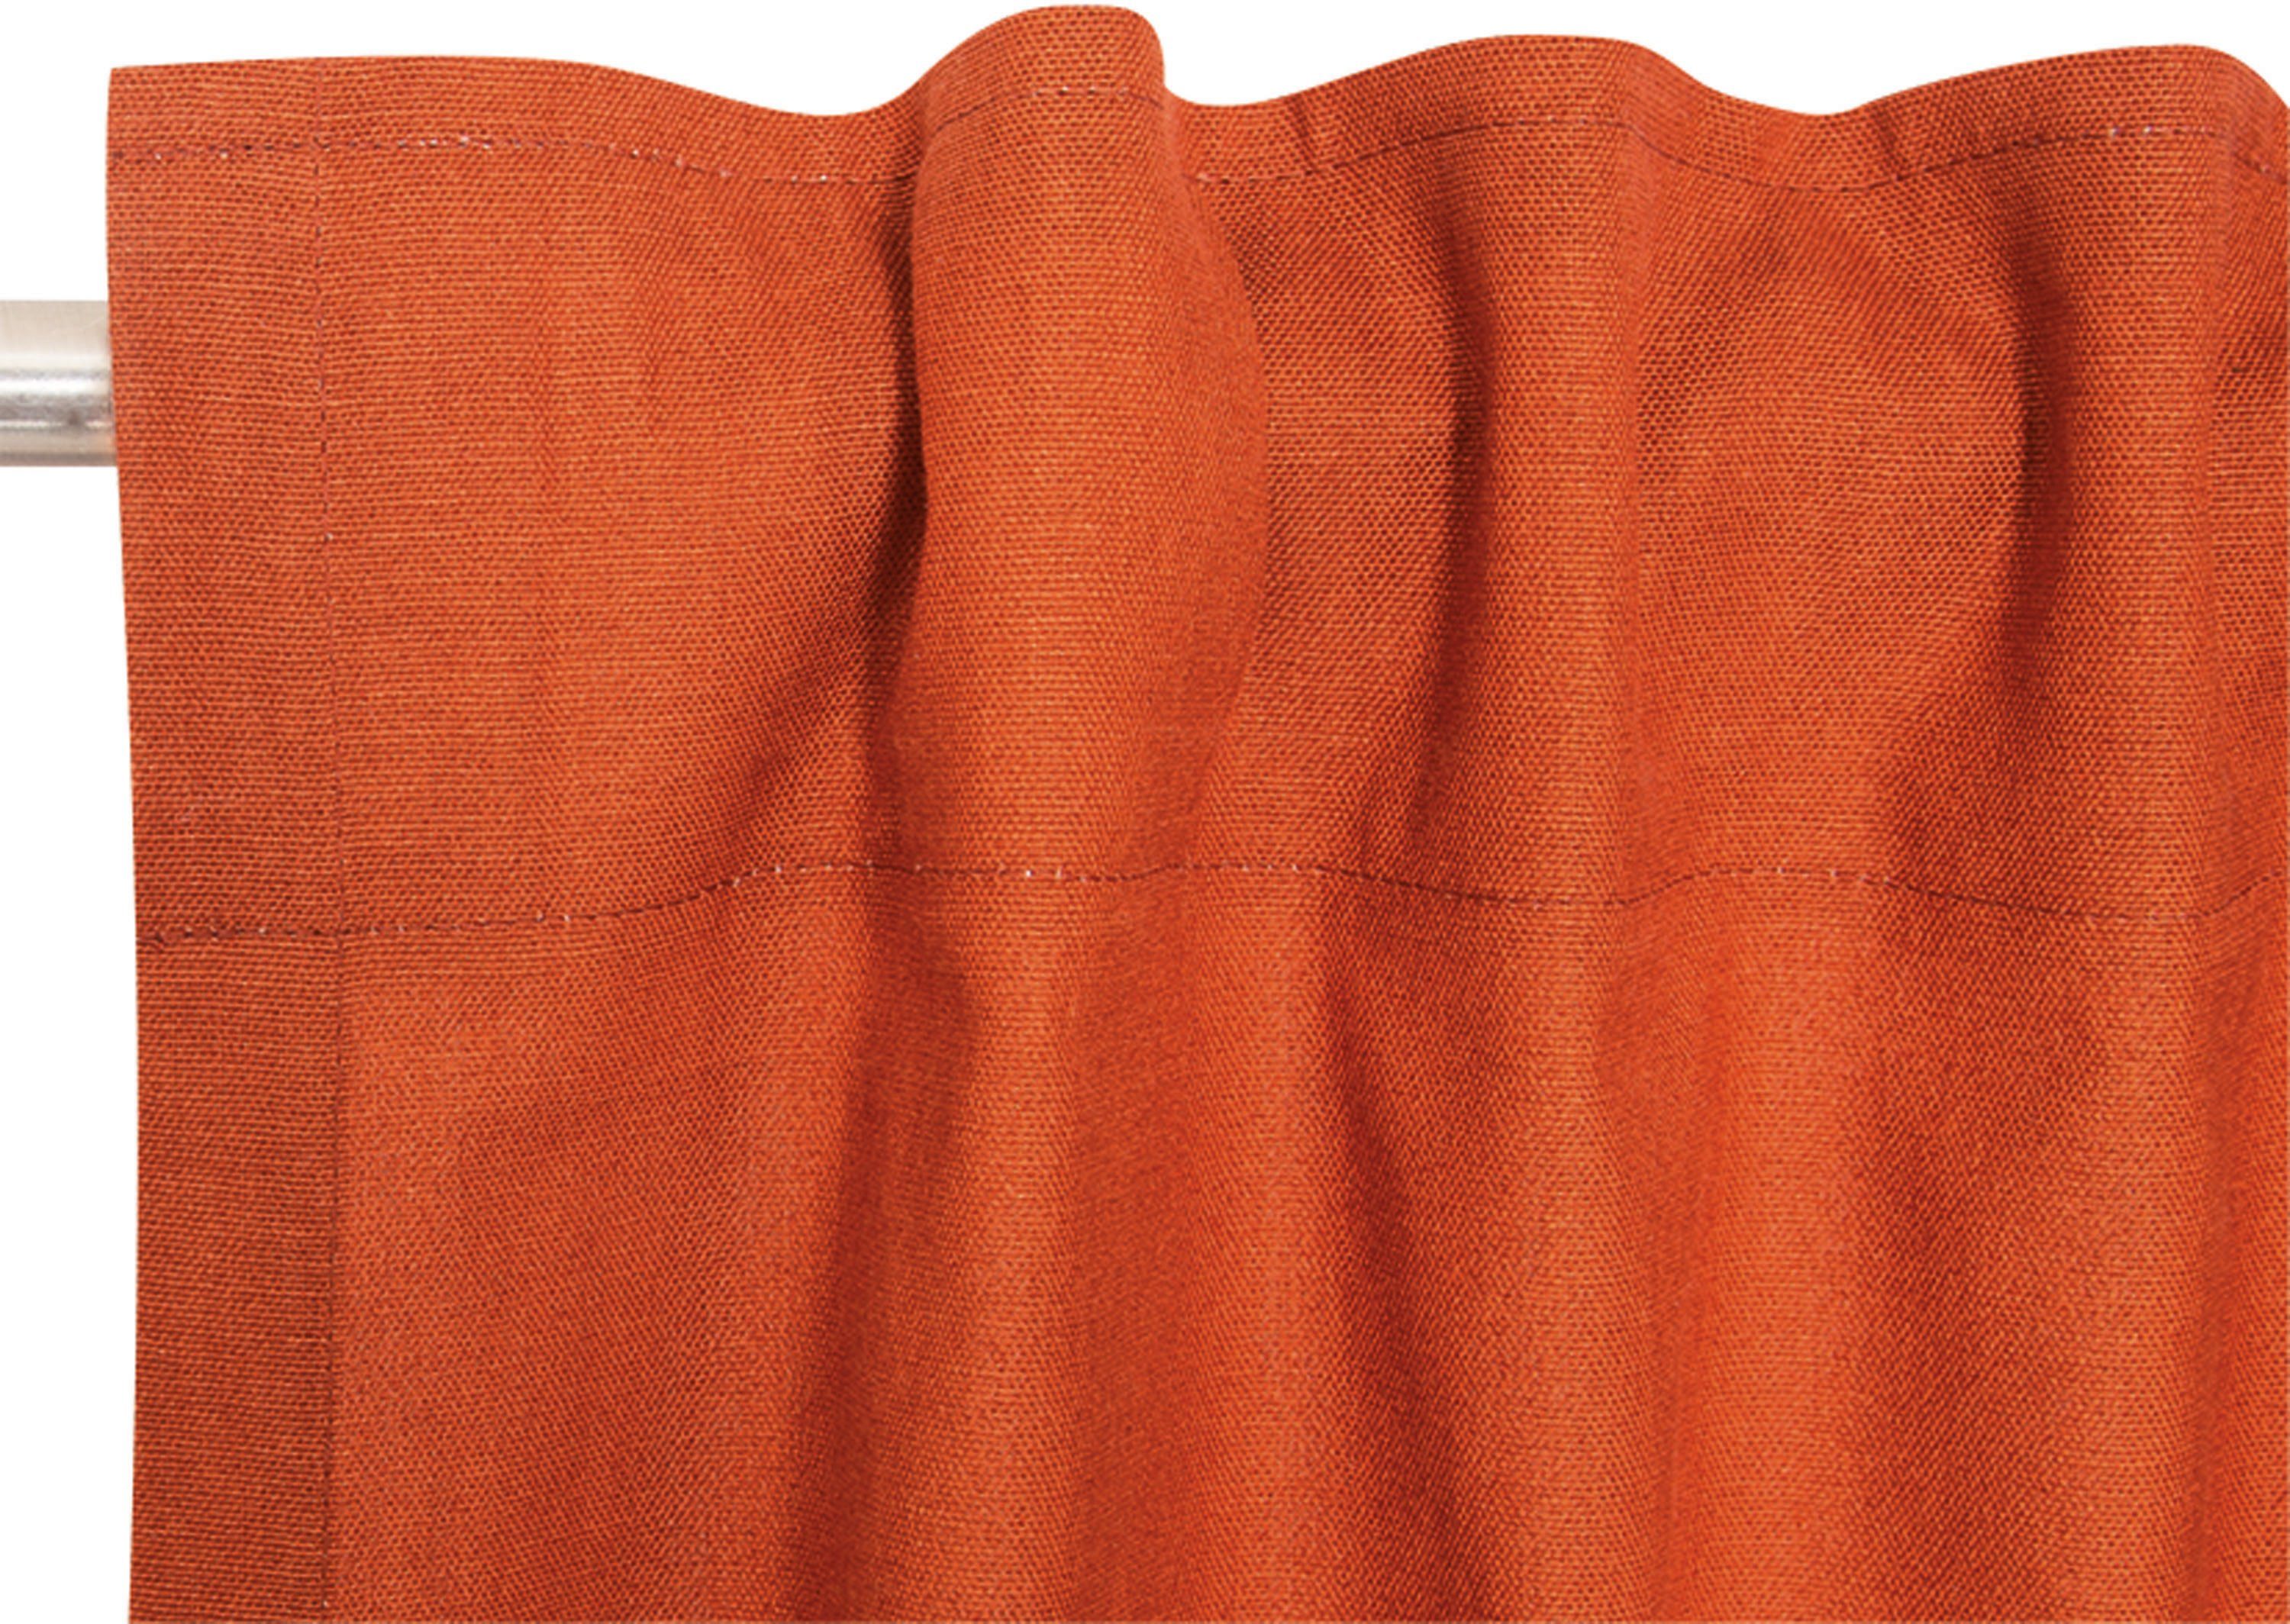 (1 verdeckte nachhaltiger Schlaufen Neo, aus St), Esprit, bronzefarben/zimt/orange Baumwolle, blickdicht, blickdicht Vorhang